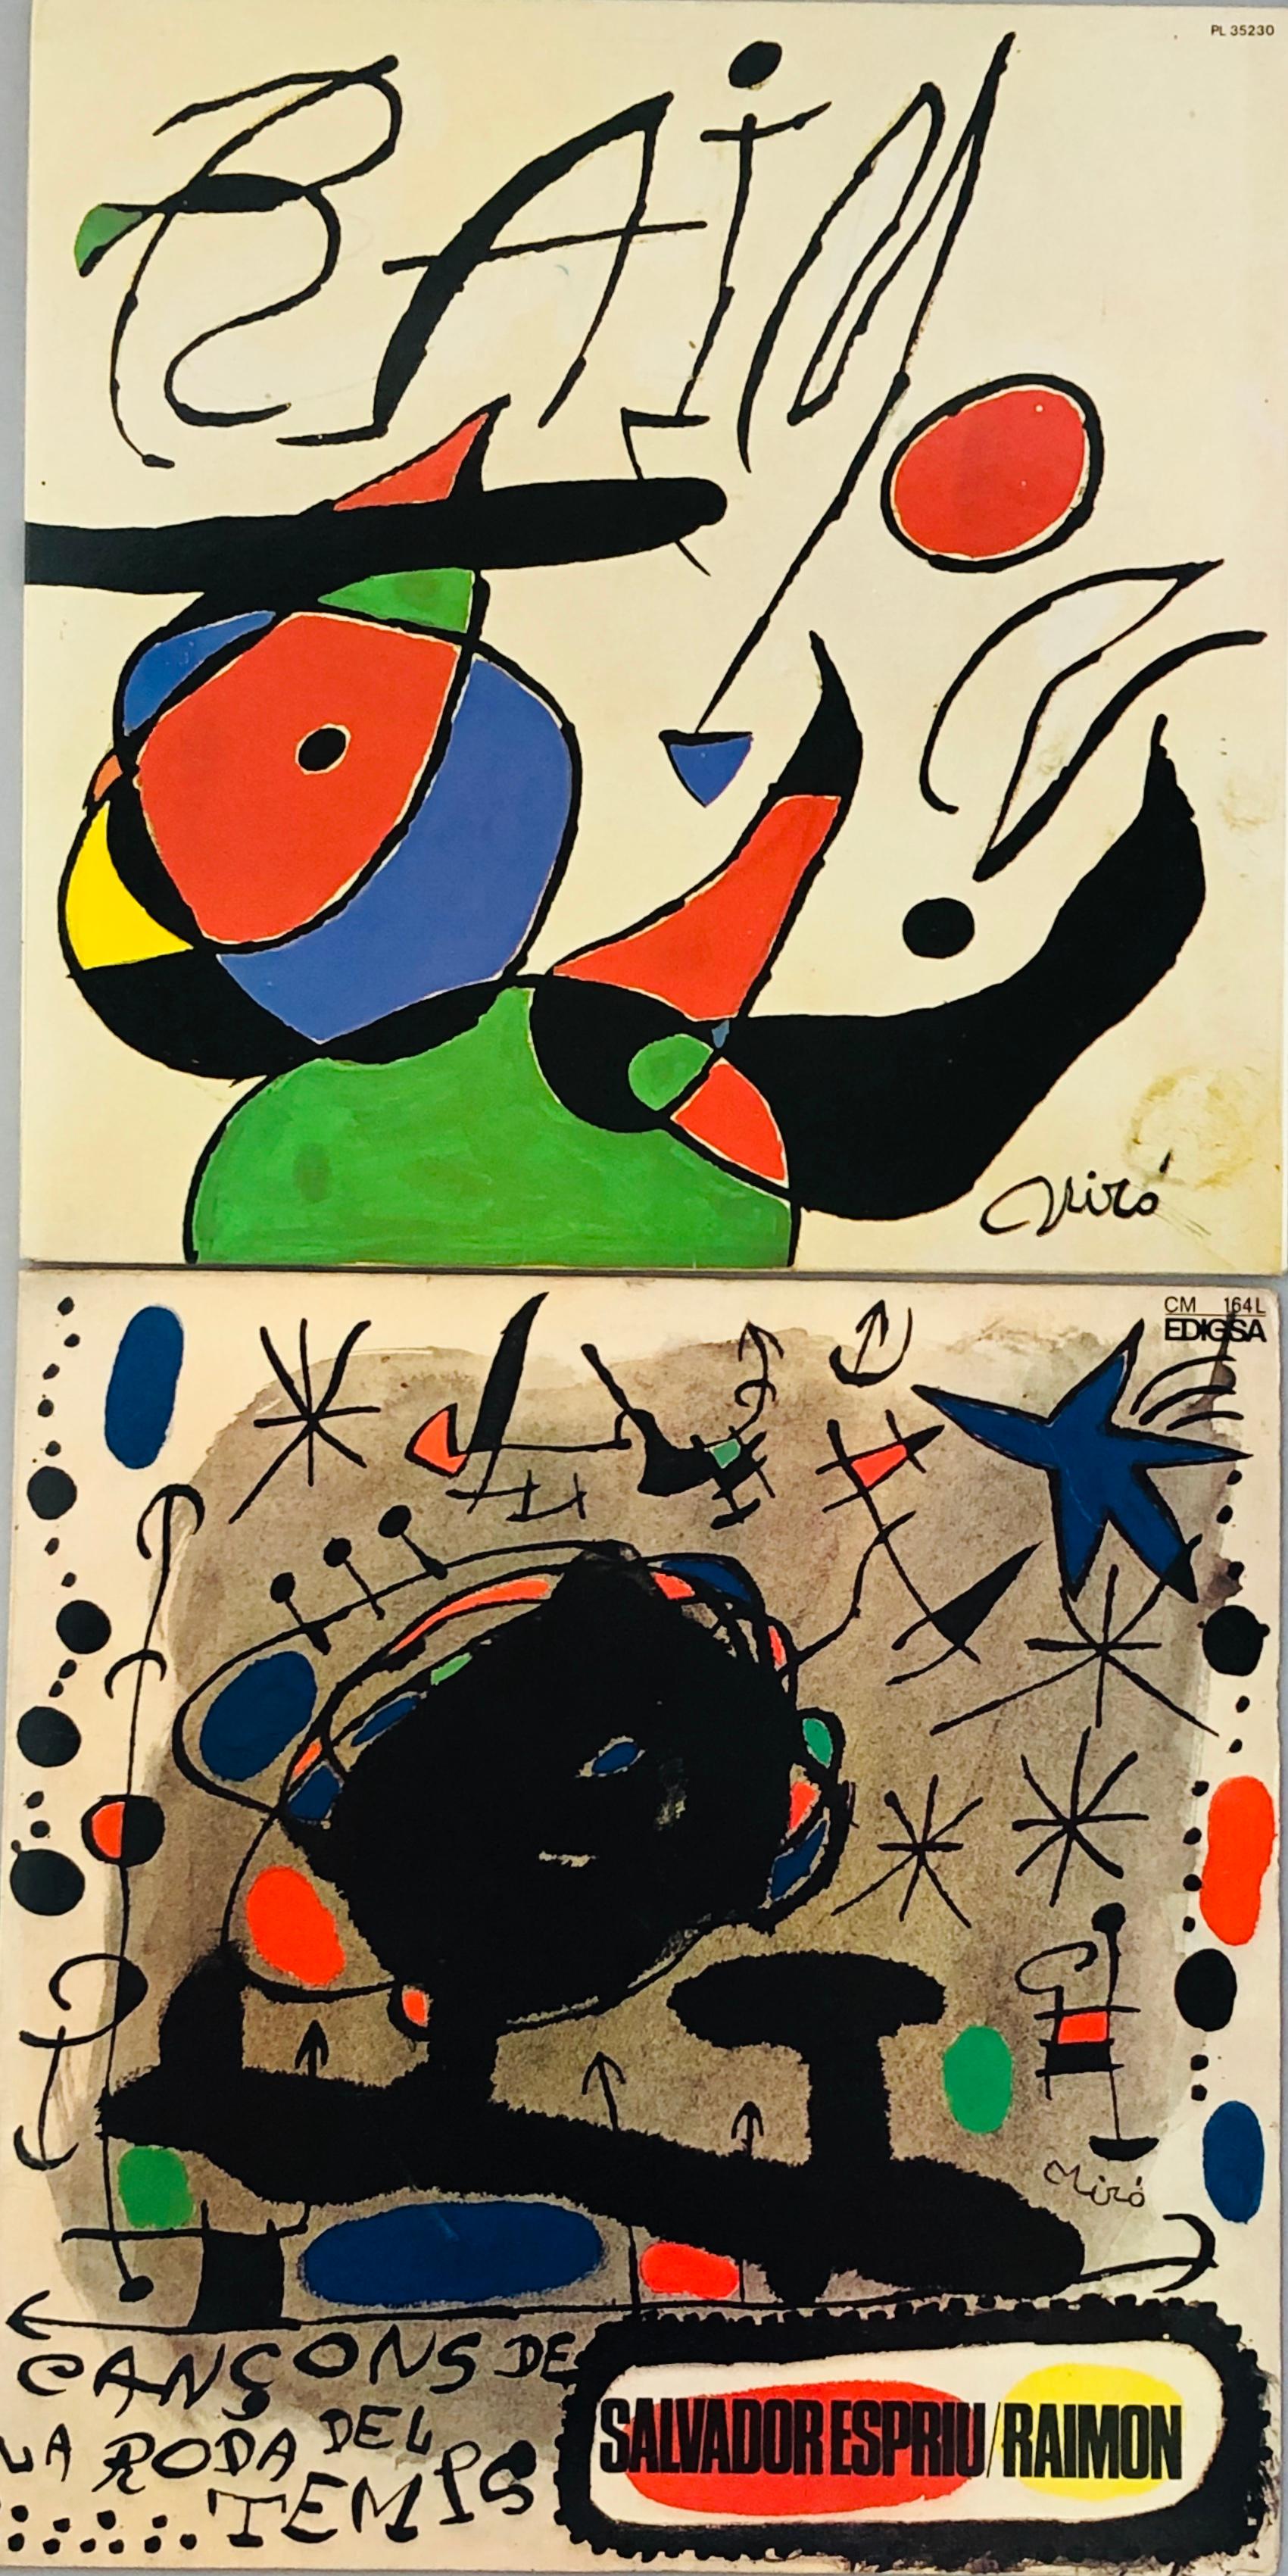 Joan Miró Vinyl Record Art (set of 2)